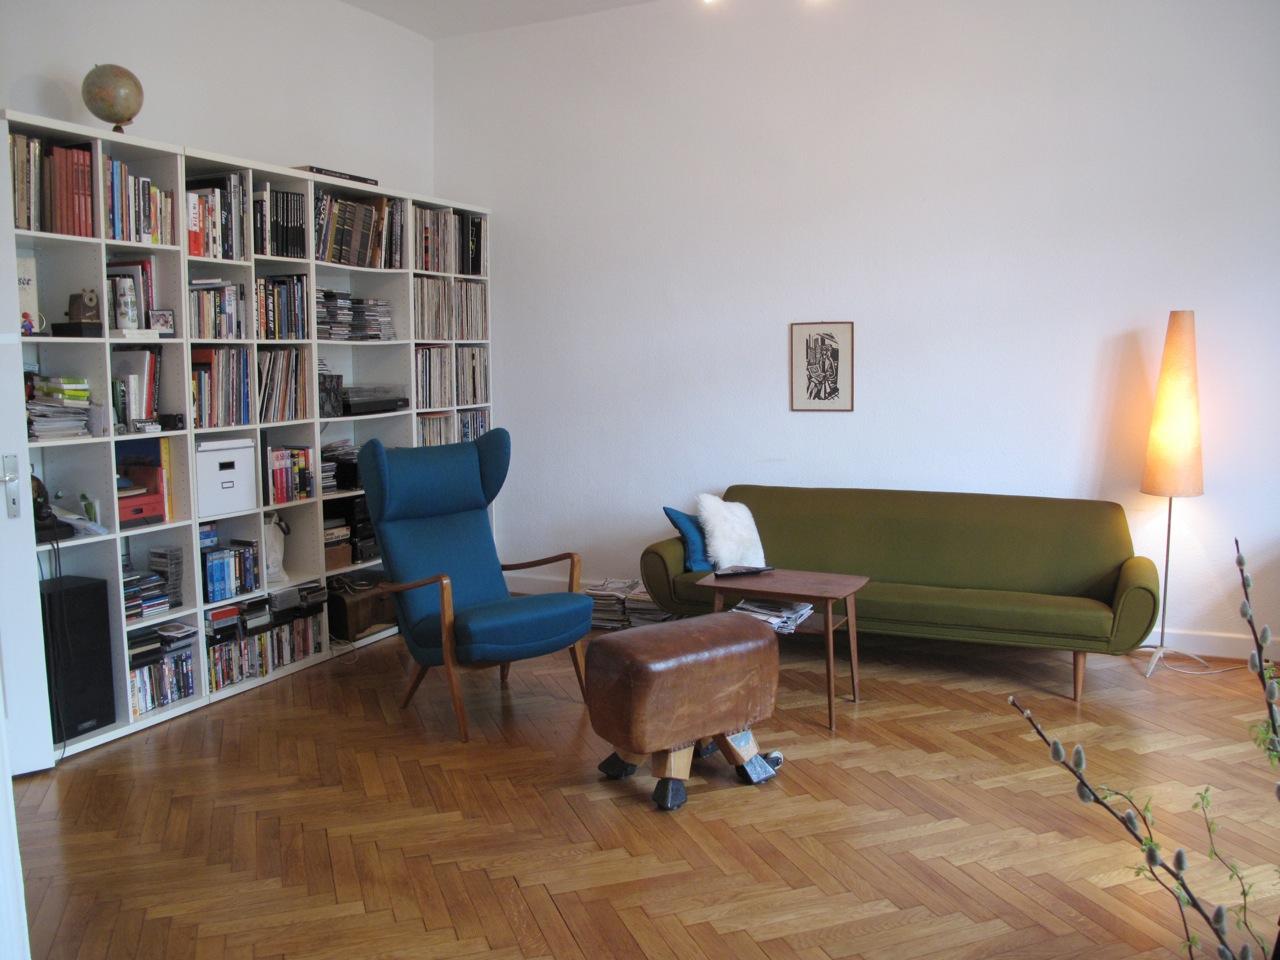 Ohrensessel und Sprung-Bock-Hocker im Wohnzimmer #vintage #ohrensessel #grünessofa ©scout for location